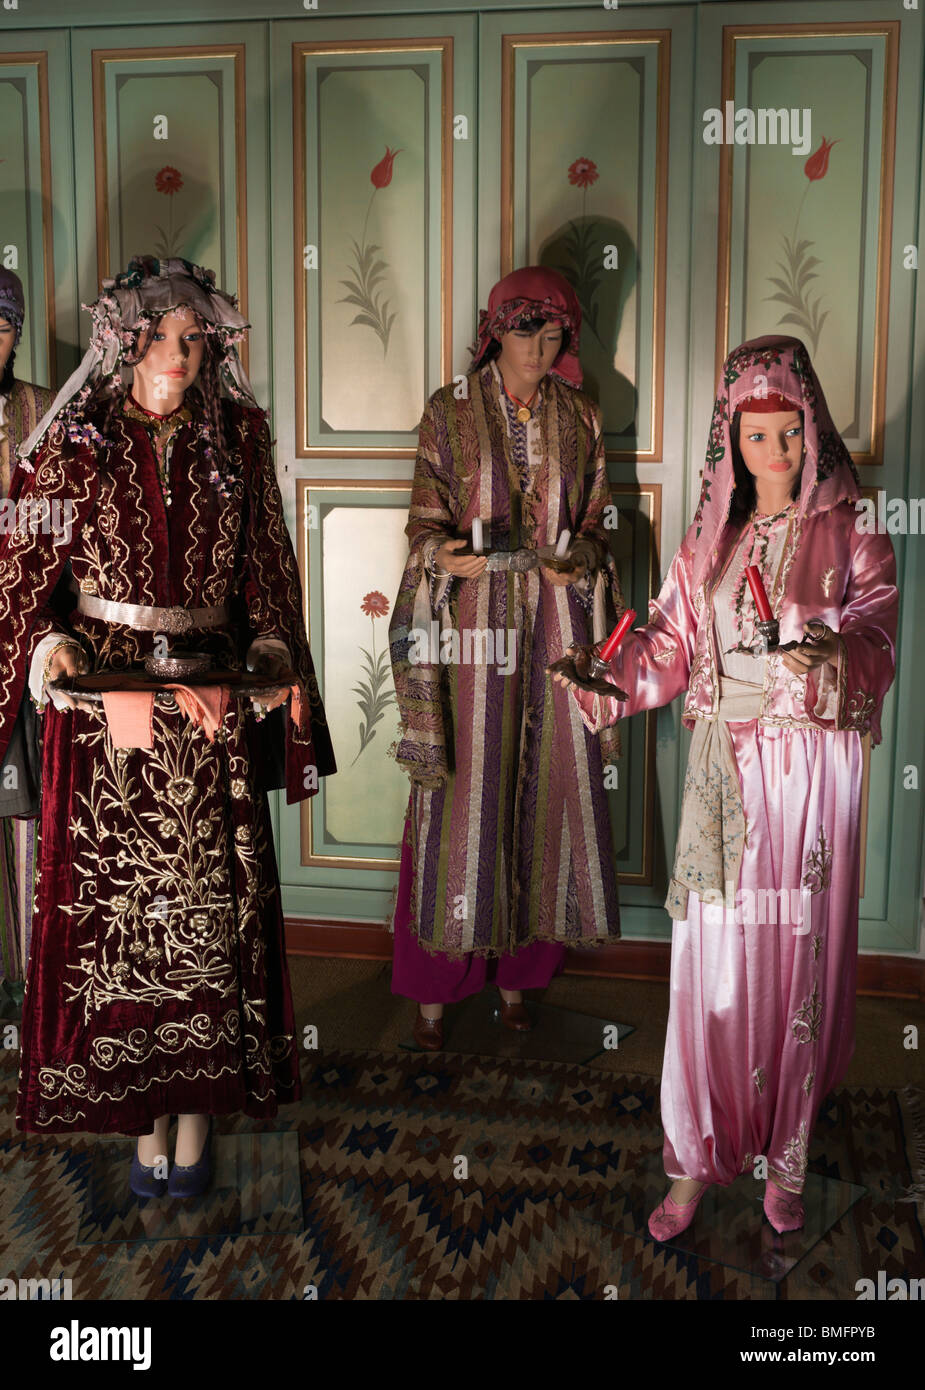 Türkei Antalya - Suna und Inan Kiraç Museum - Anzeige des 19. Jahrhunderts Kostüm und Innenräume Stockfoto